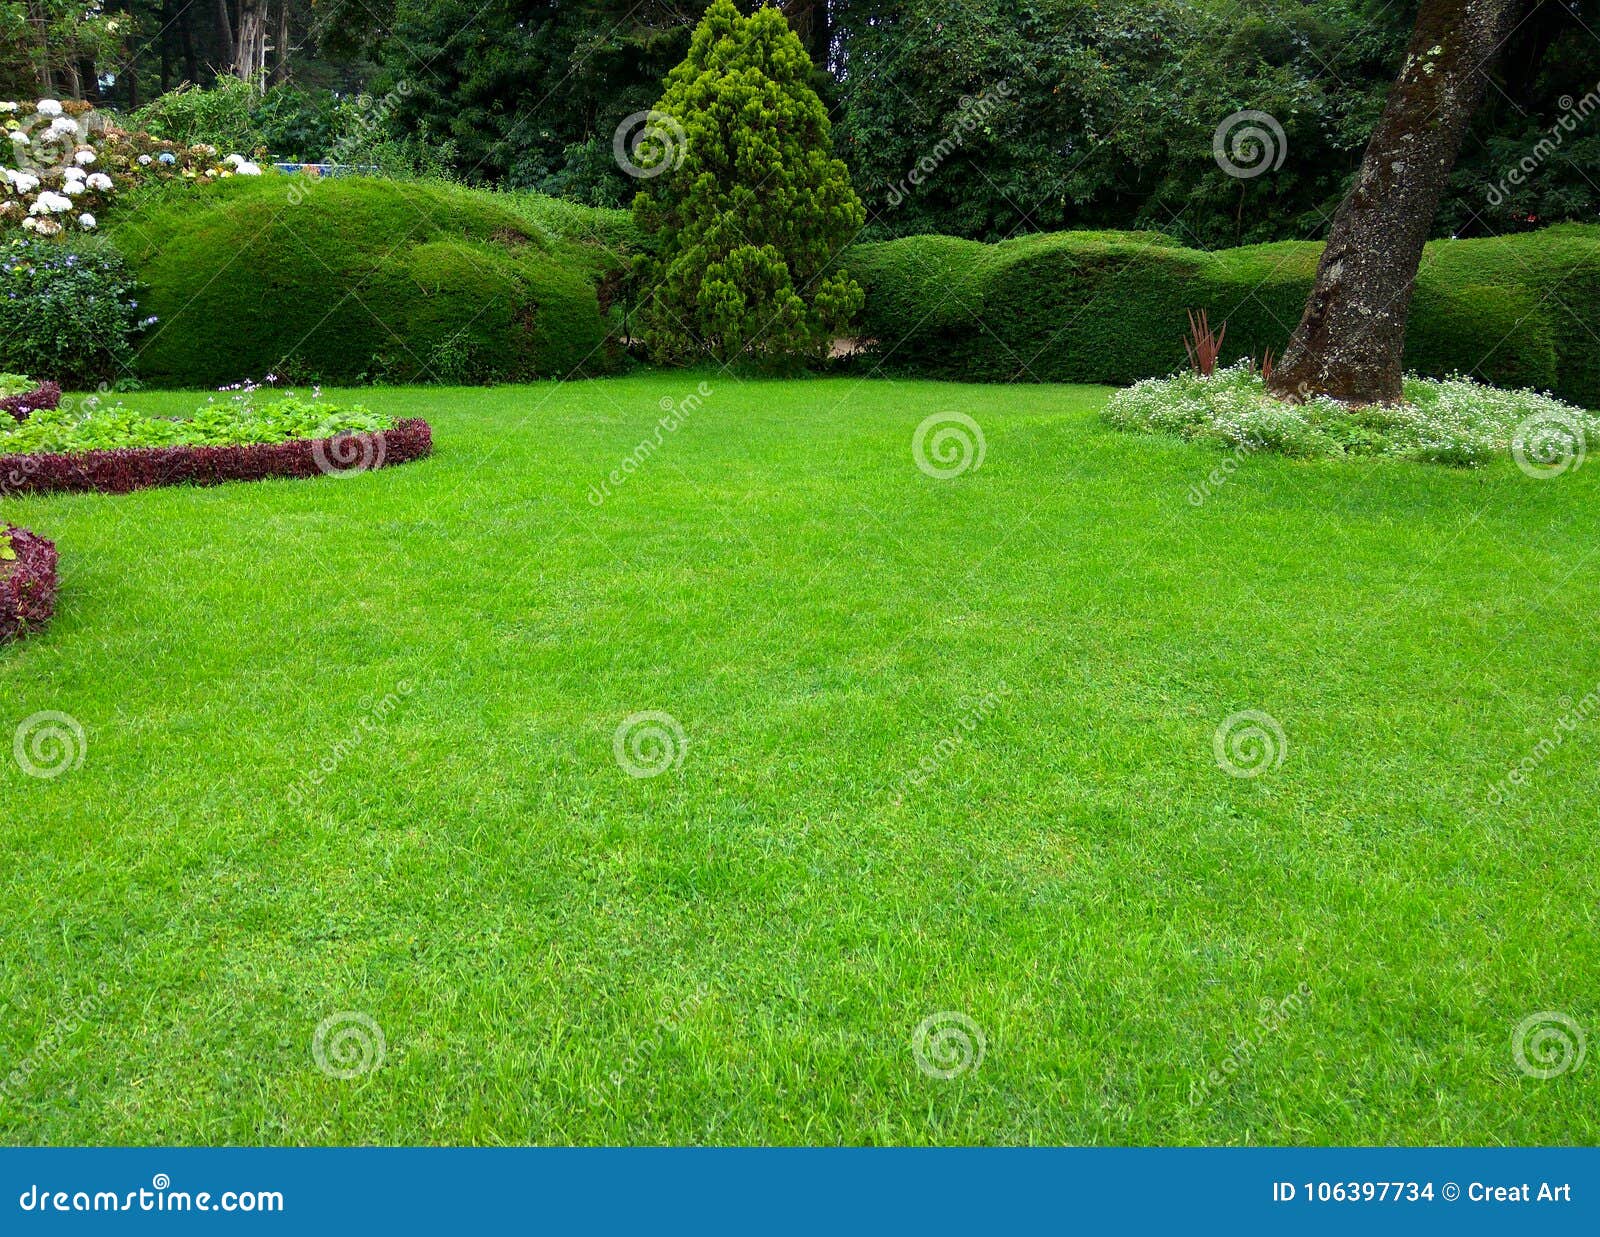 lawn, beatiful green grass garden